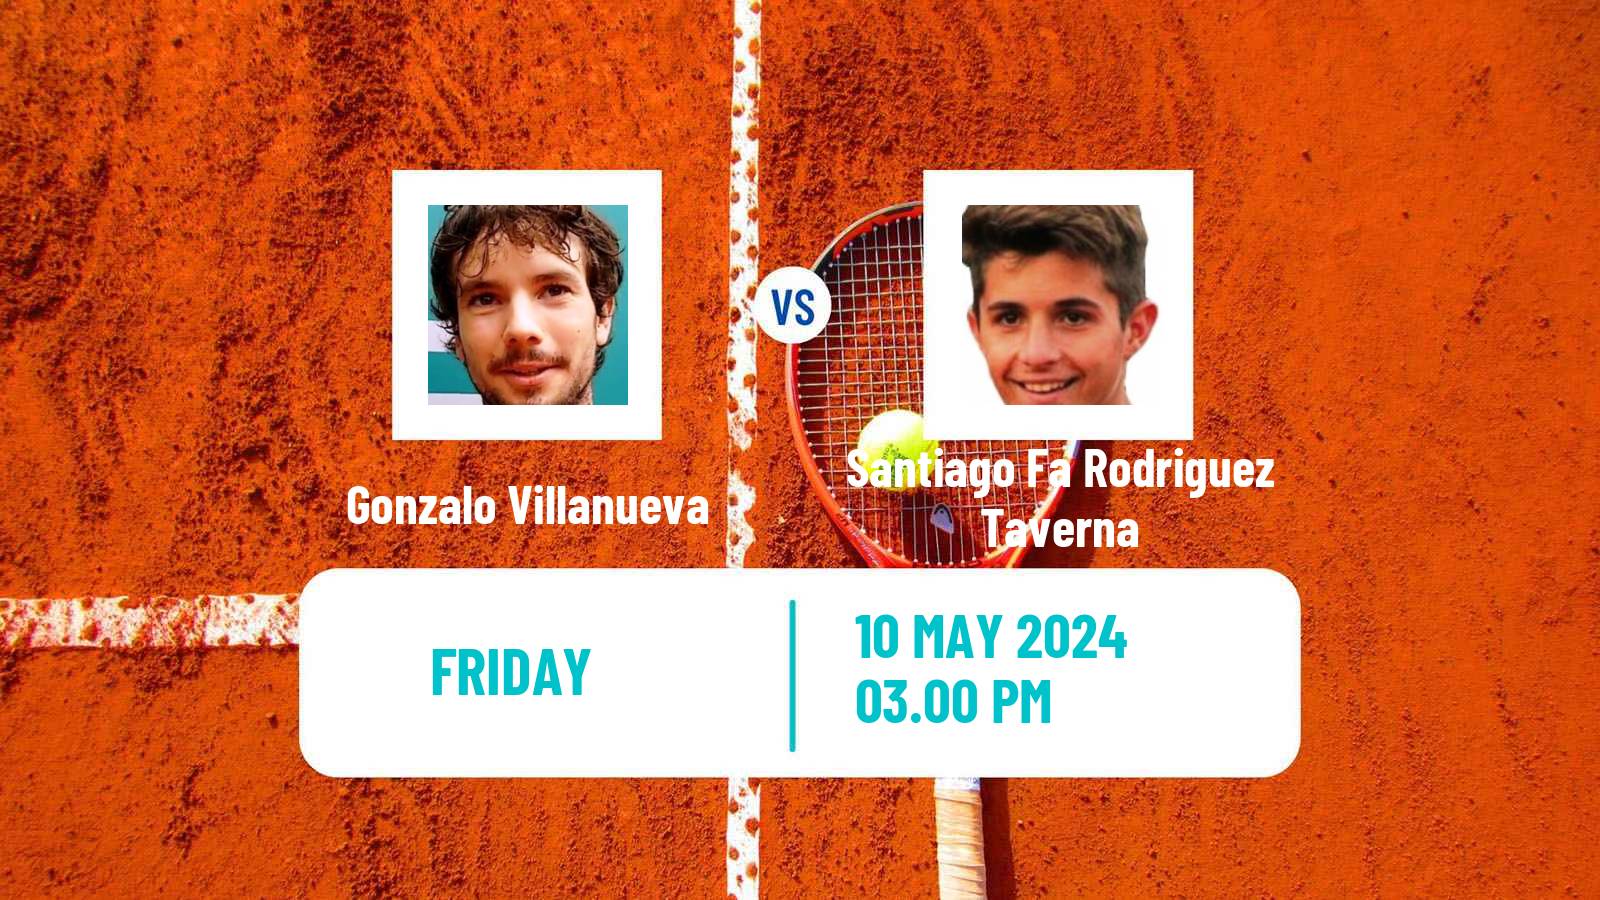 Tennis Santos Challenger Men Gonzalo Villanueva - Santiago Fa Rodriguez Taverna